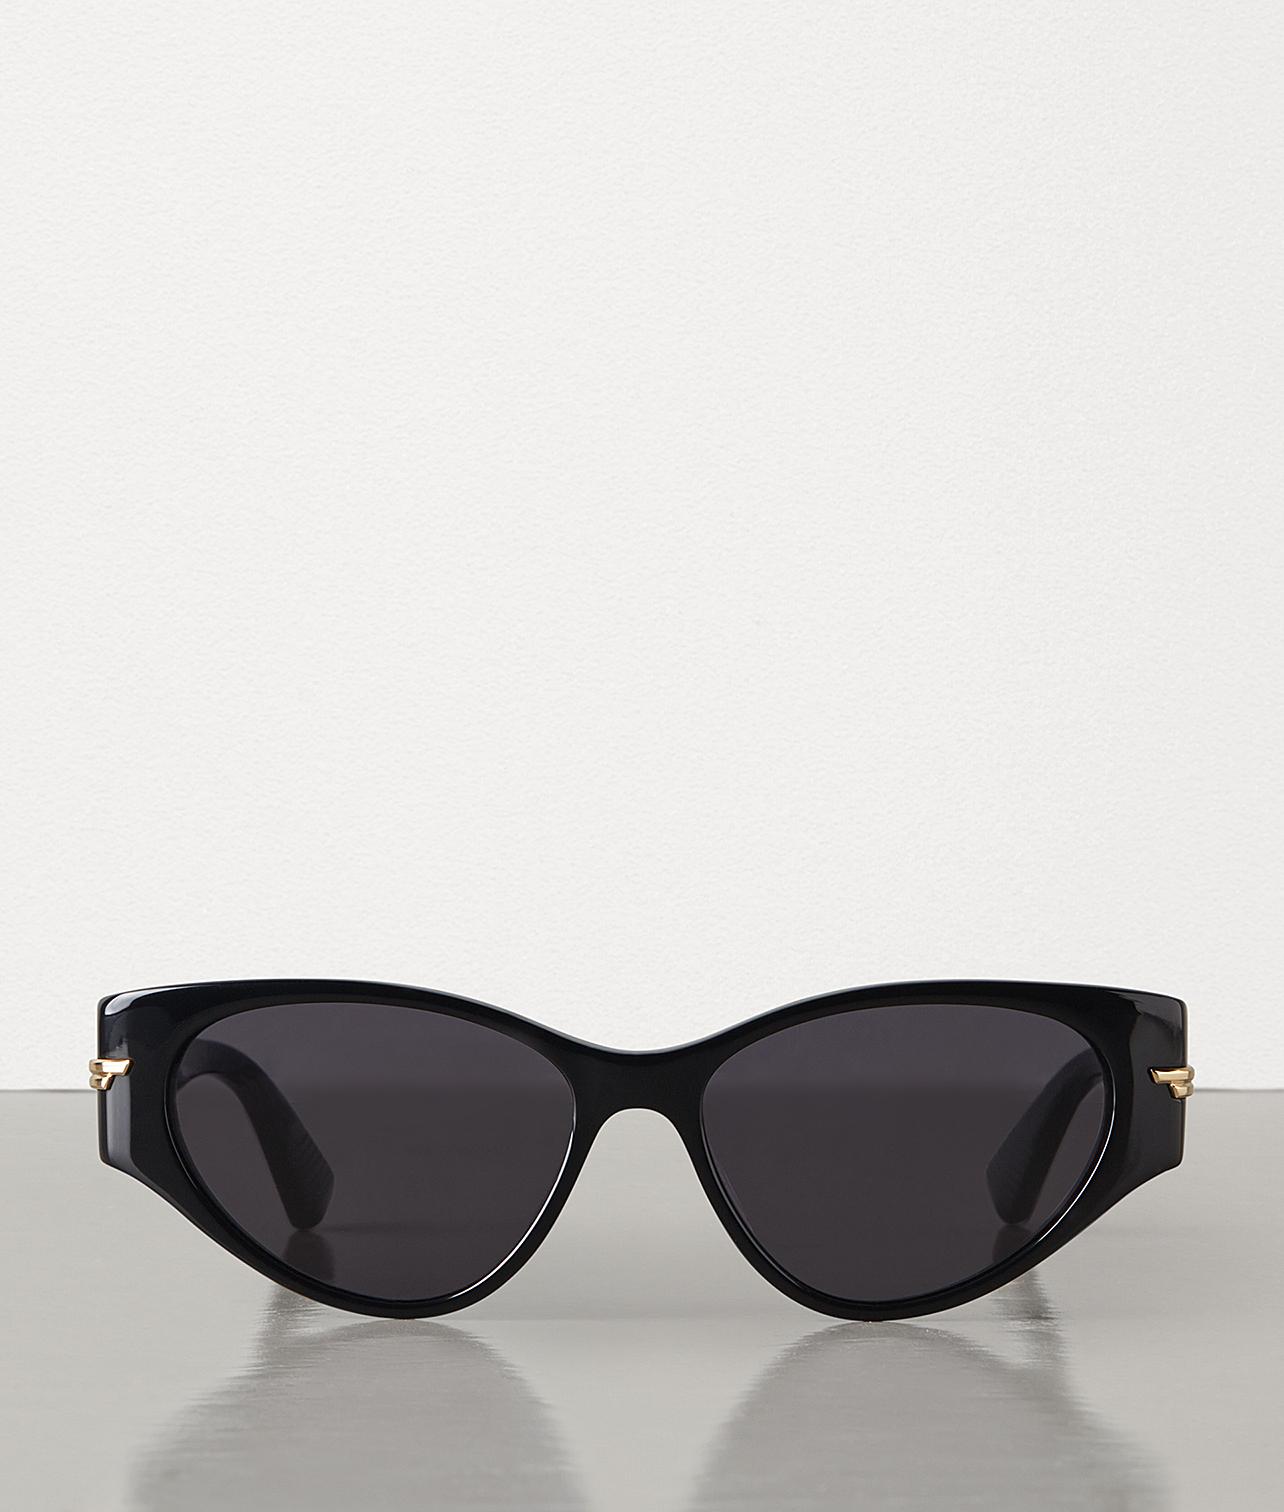 Bottega Veneta The Original 02 Sunglasses in Black - Lyst